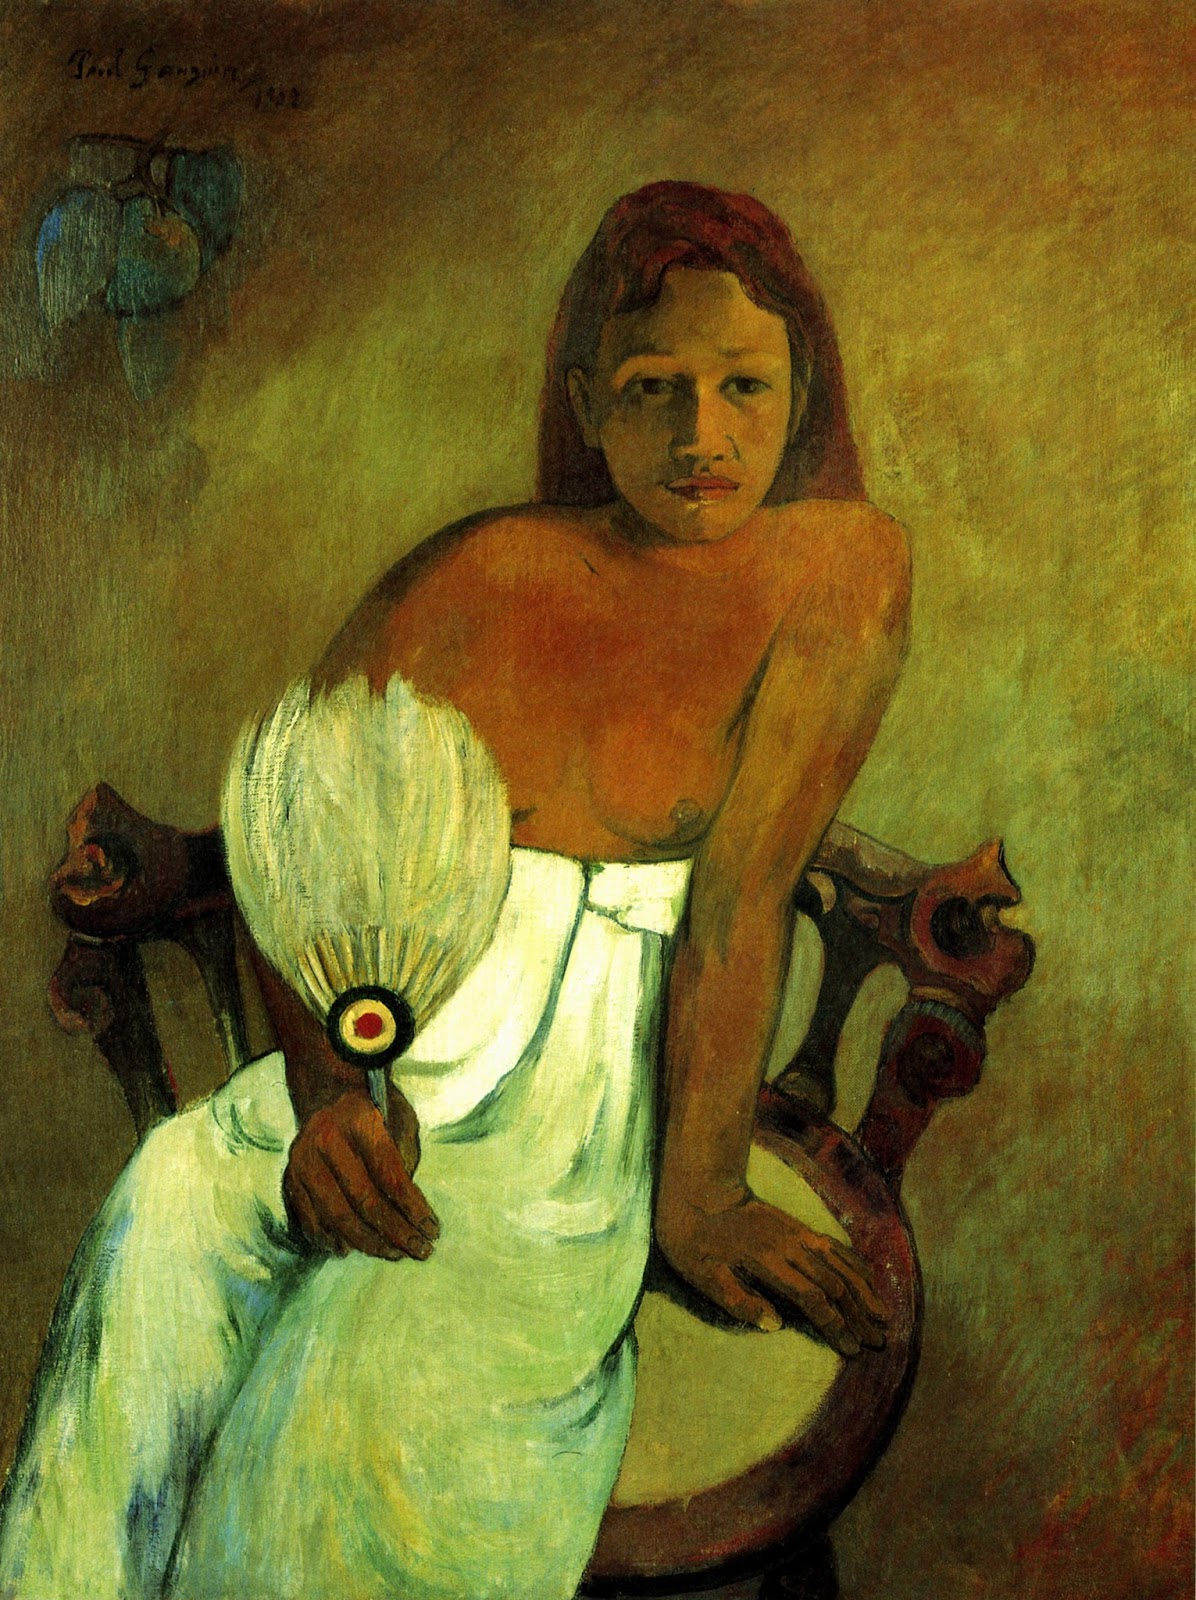 Paul+Gauguin-1848-1903 (435).jpg